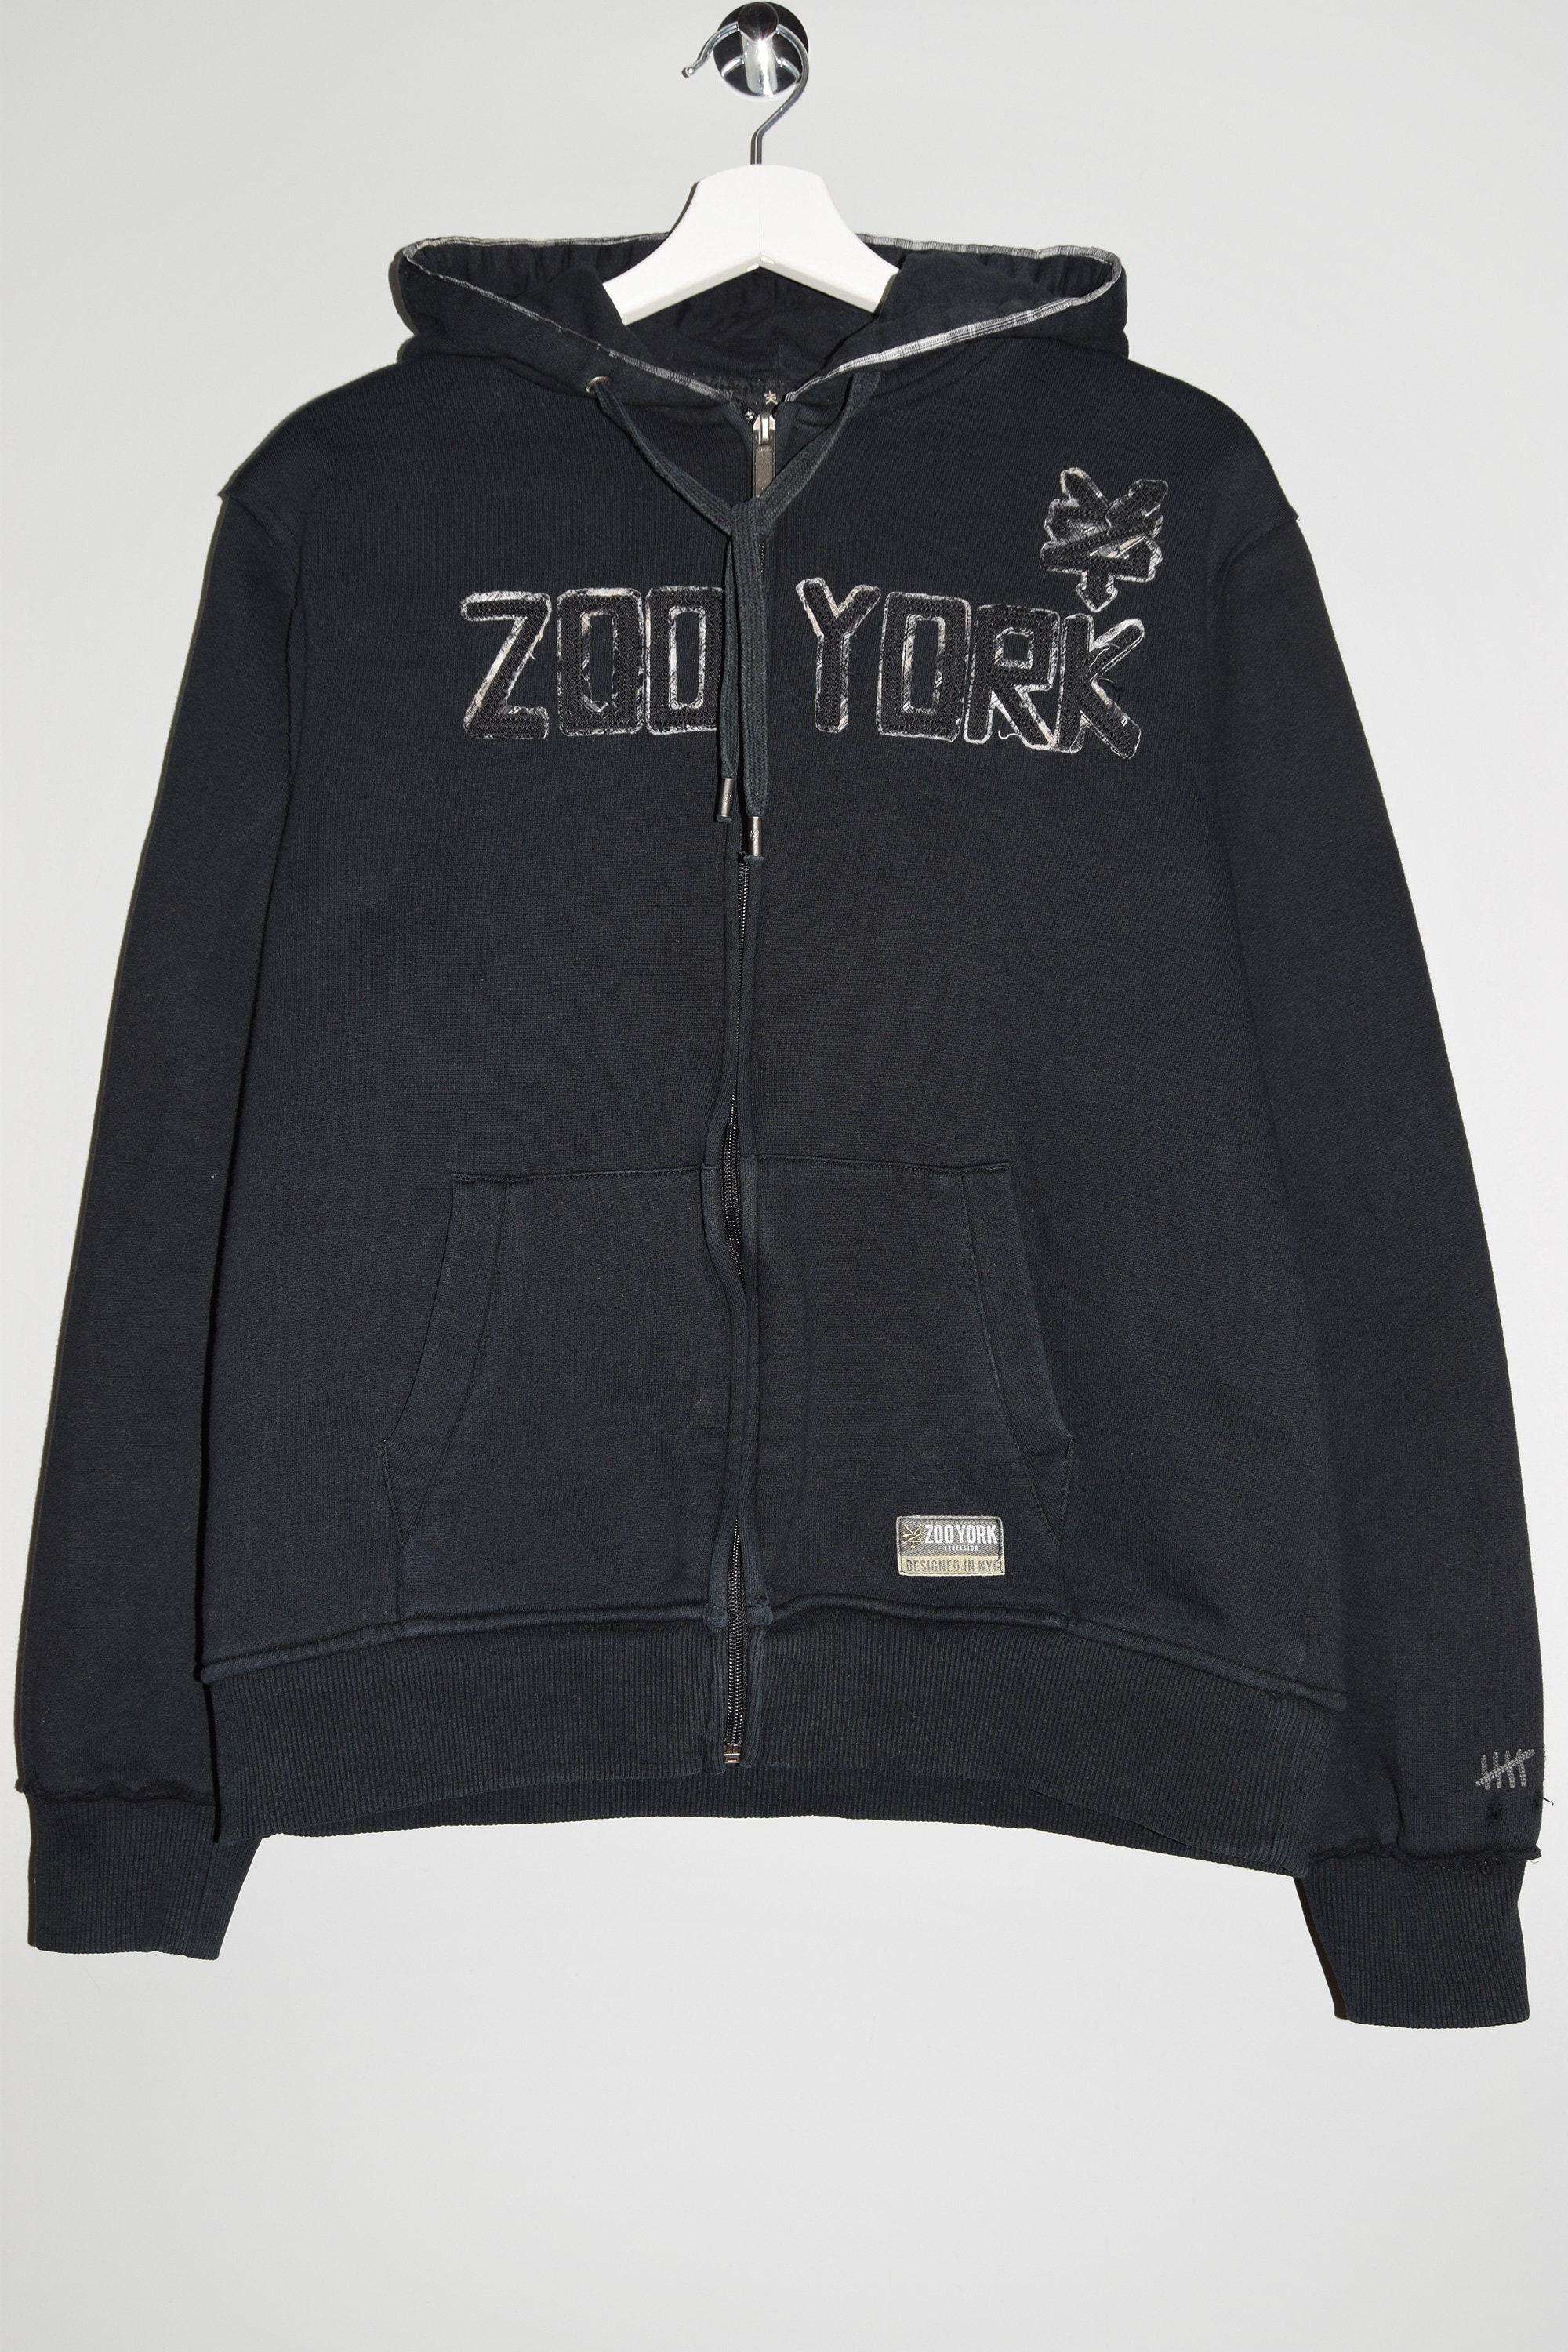 Zoo York Full Zip Hoodie Noir à capuche Full Zip Sweatshirt - Etsy France